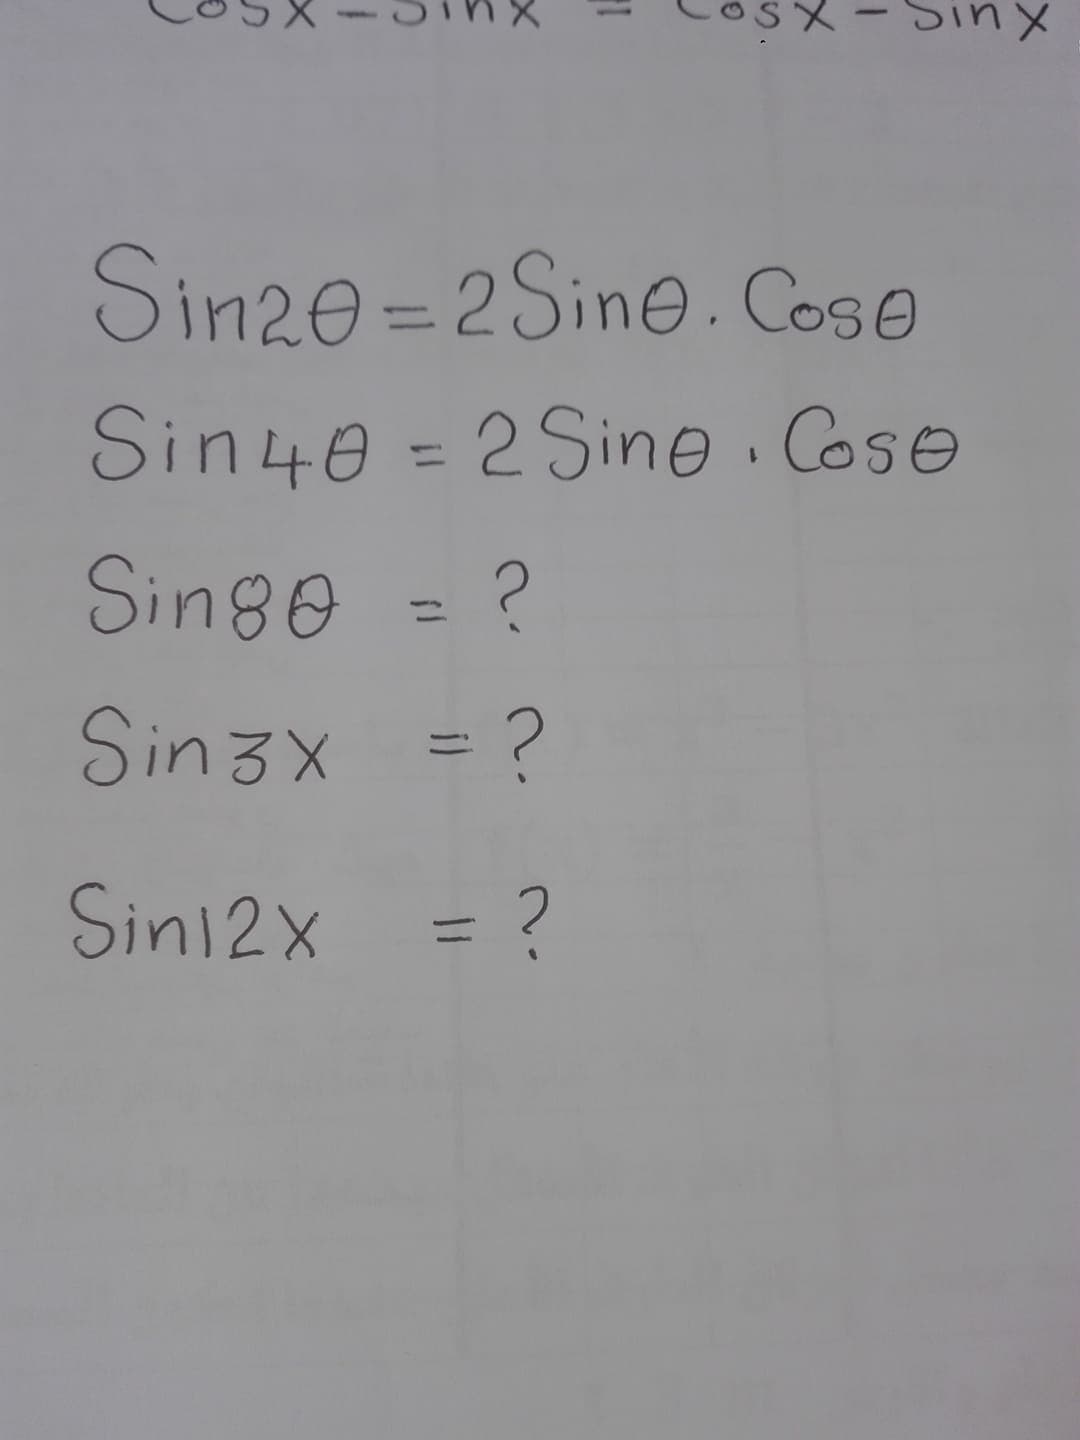 Xuis
Sin20 =2Sine. Cose
Sin40 = 2 Sine. Coso
Singe = ?
%3D
Sin3x =?
Sin12x = ?
り、
